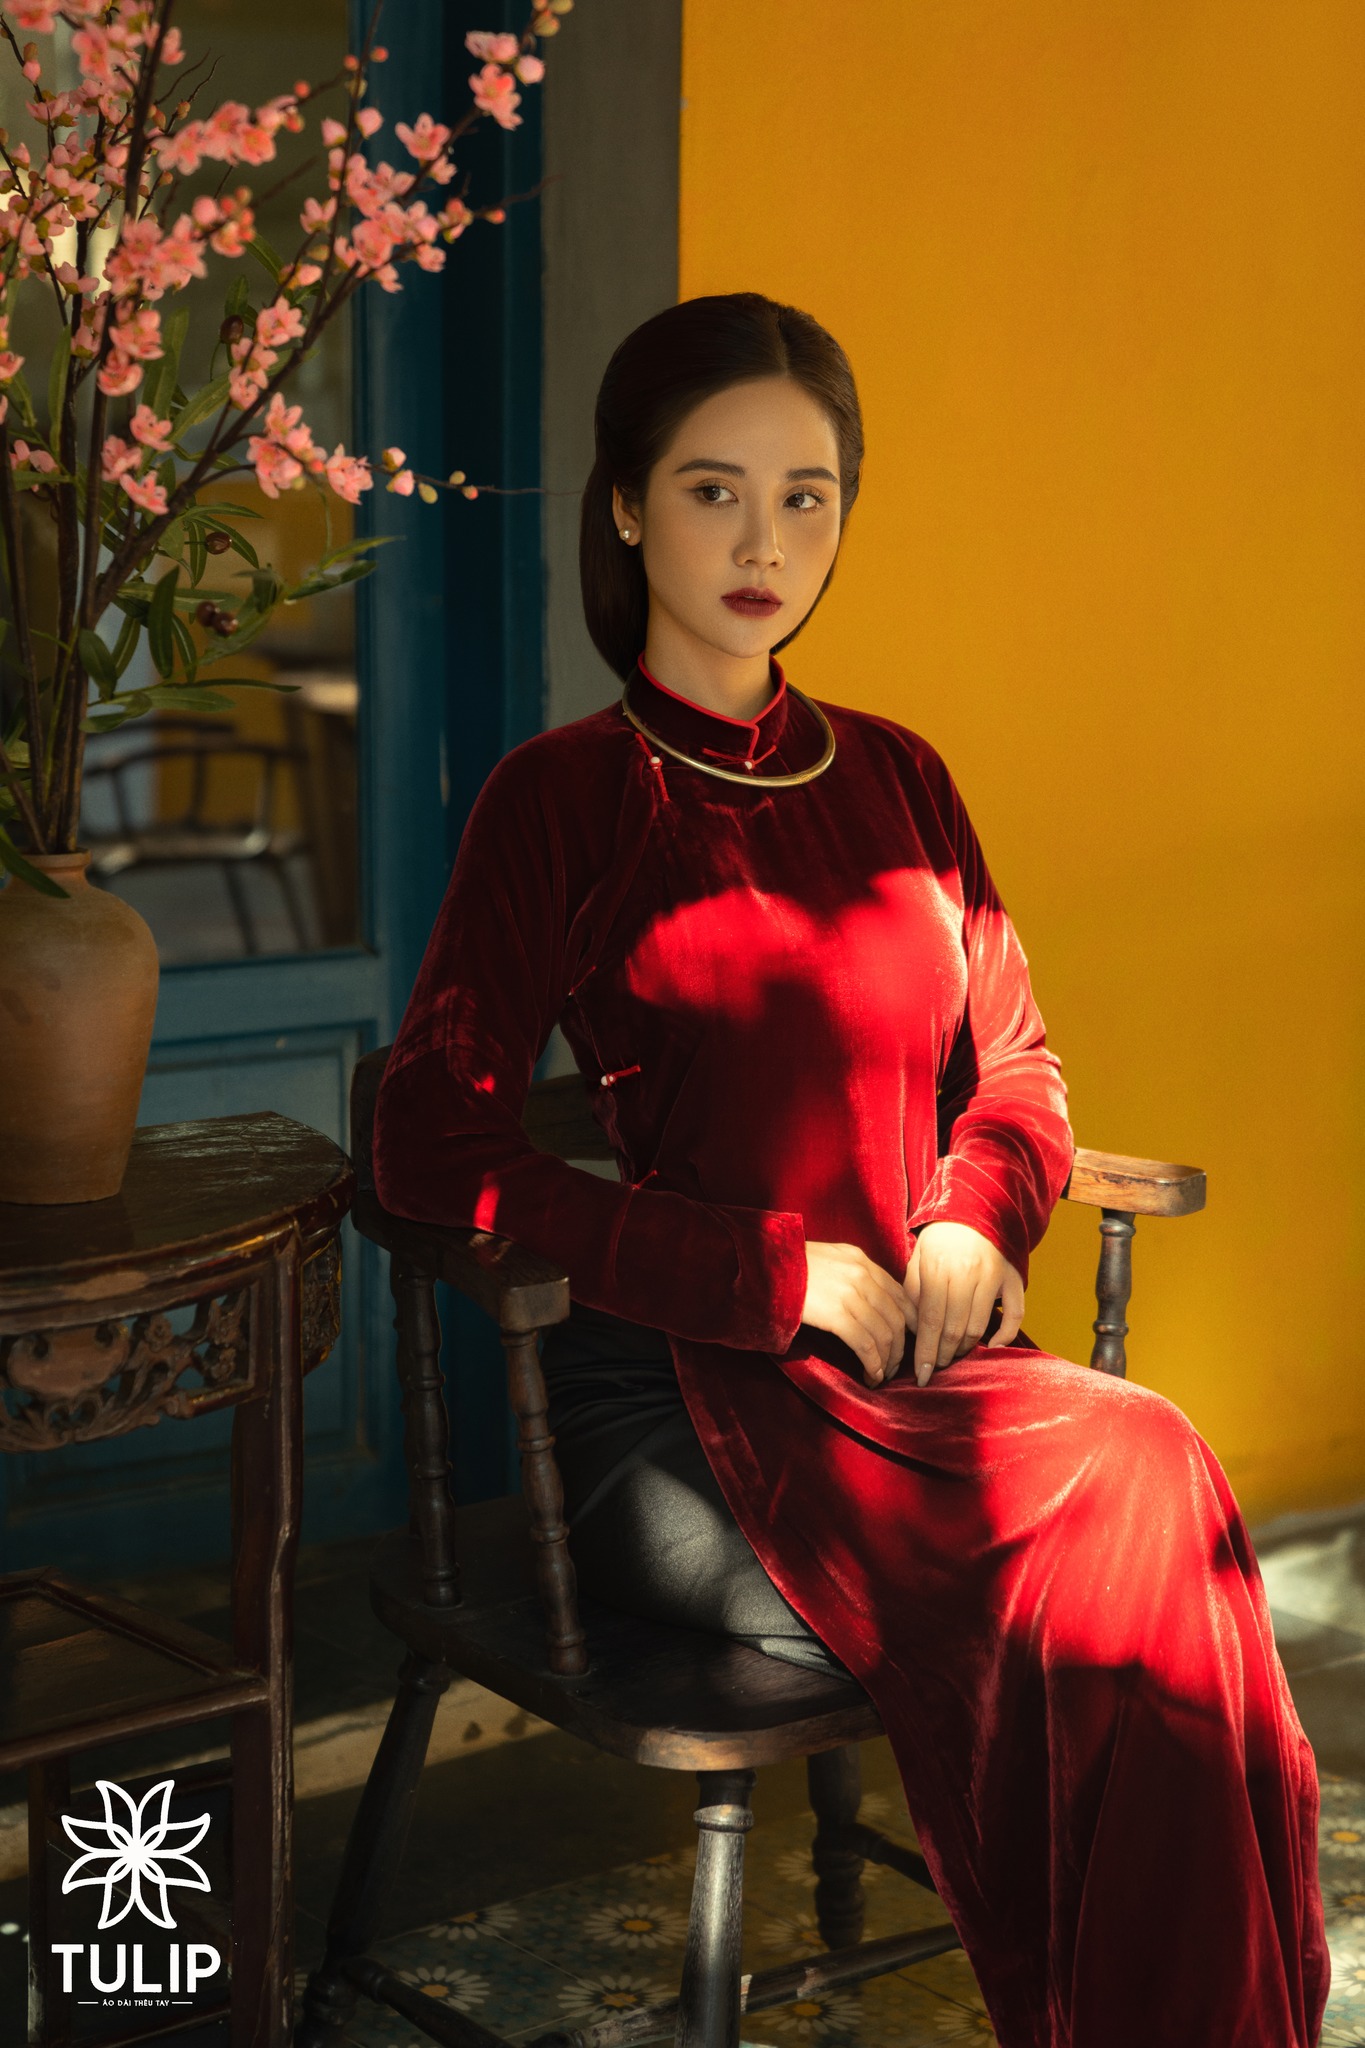 Áo dài Tết là trang phục truyền thống của người Việt, tôn vinh vẻ đẹp và quyến rũ của phụ nữ. Hãy chọn cho mình một bộ áo dài Tết tinh tế và phù hợp với sở thích cá nhân, để trở thành người đẹp lung linh trong bức ảnh Tết đầu năm.